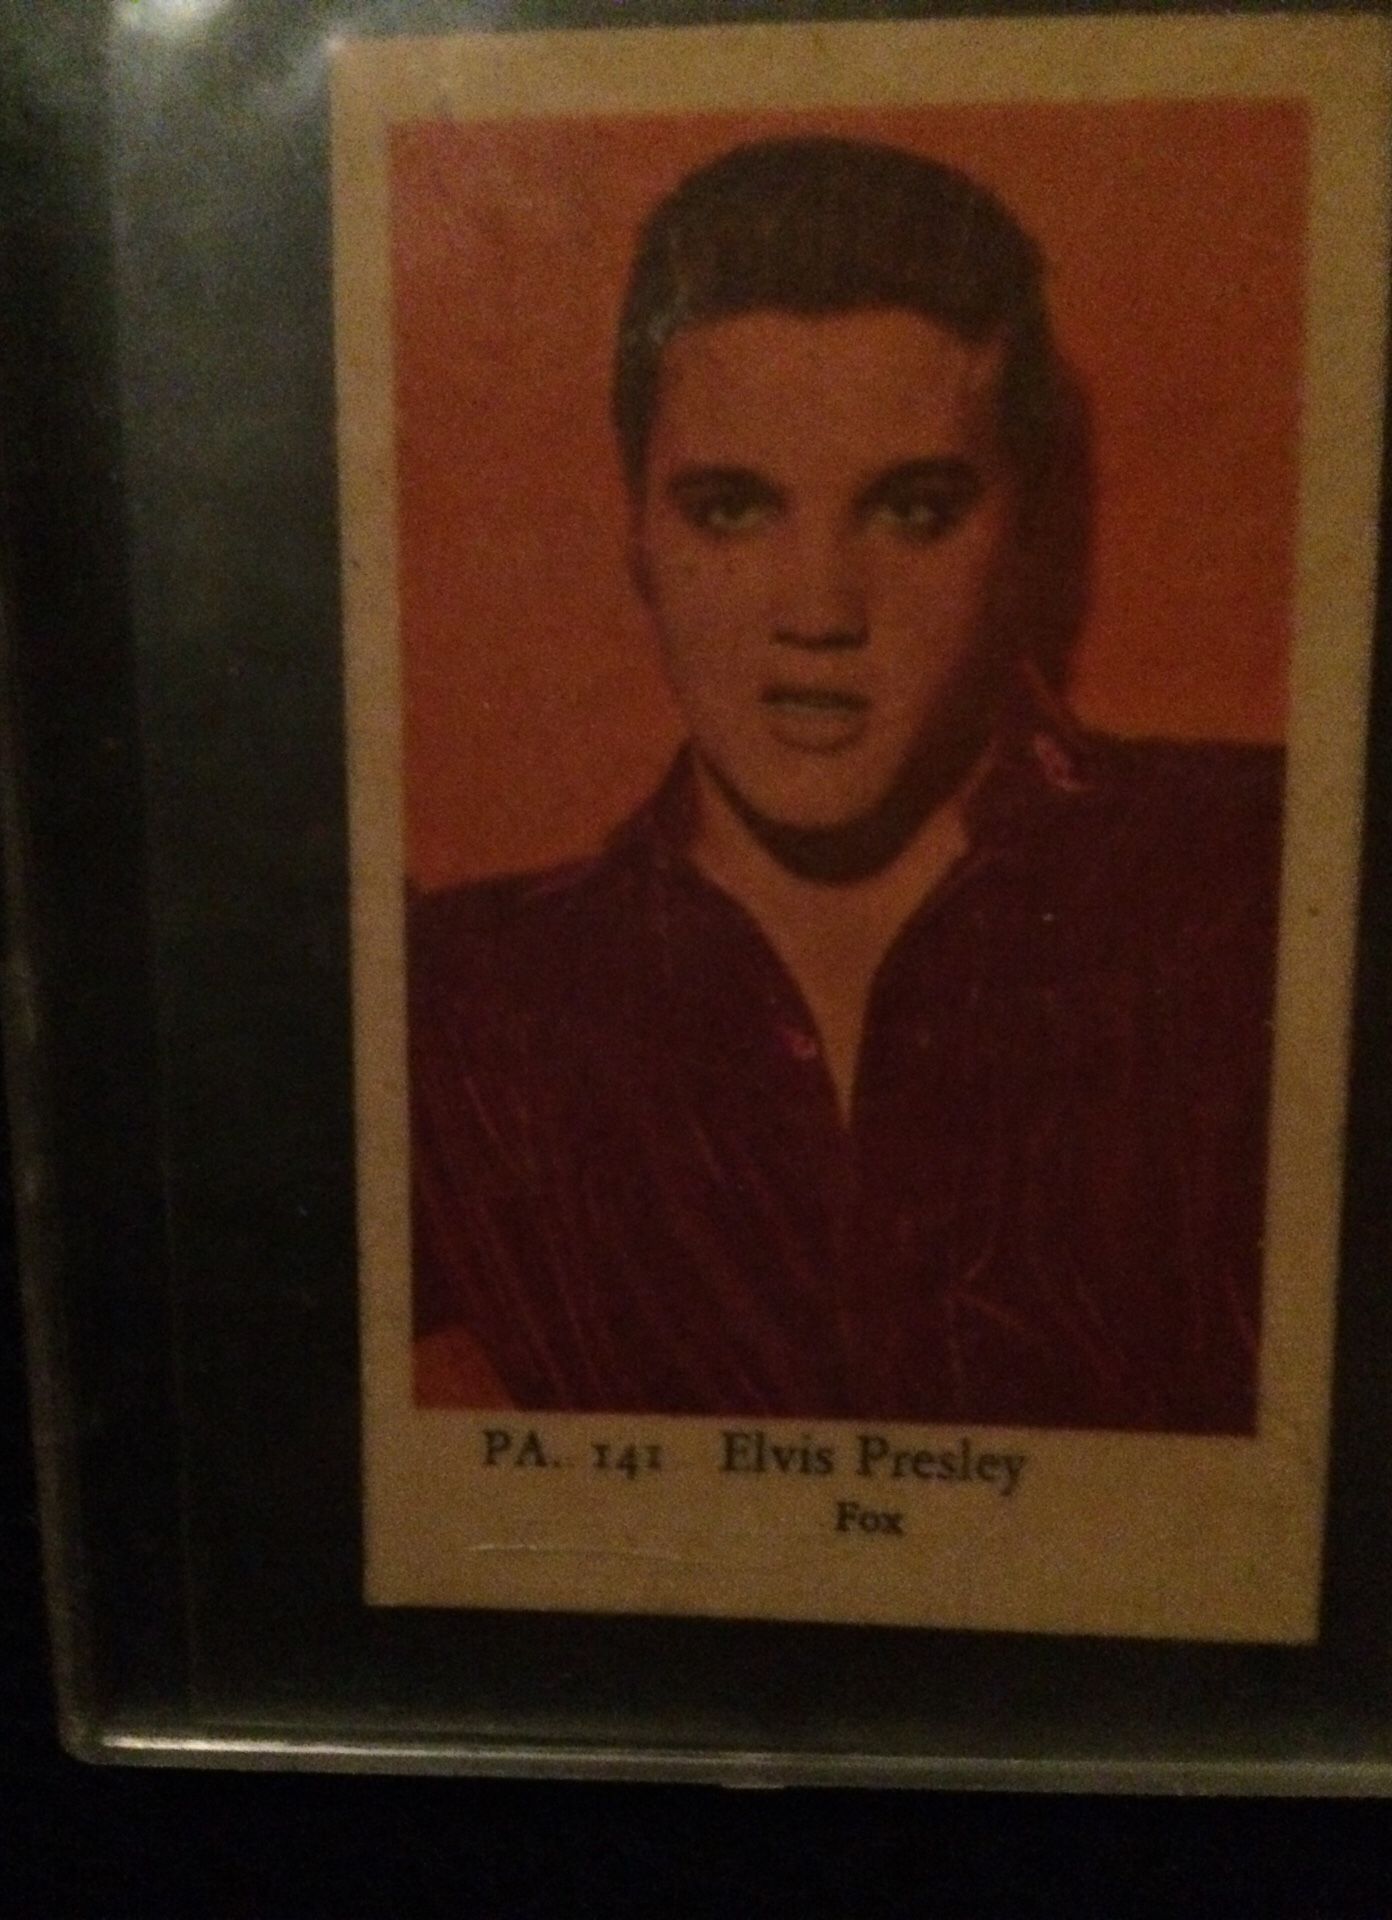 1958 Elvis Presley P.A. 141 photo by Fox